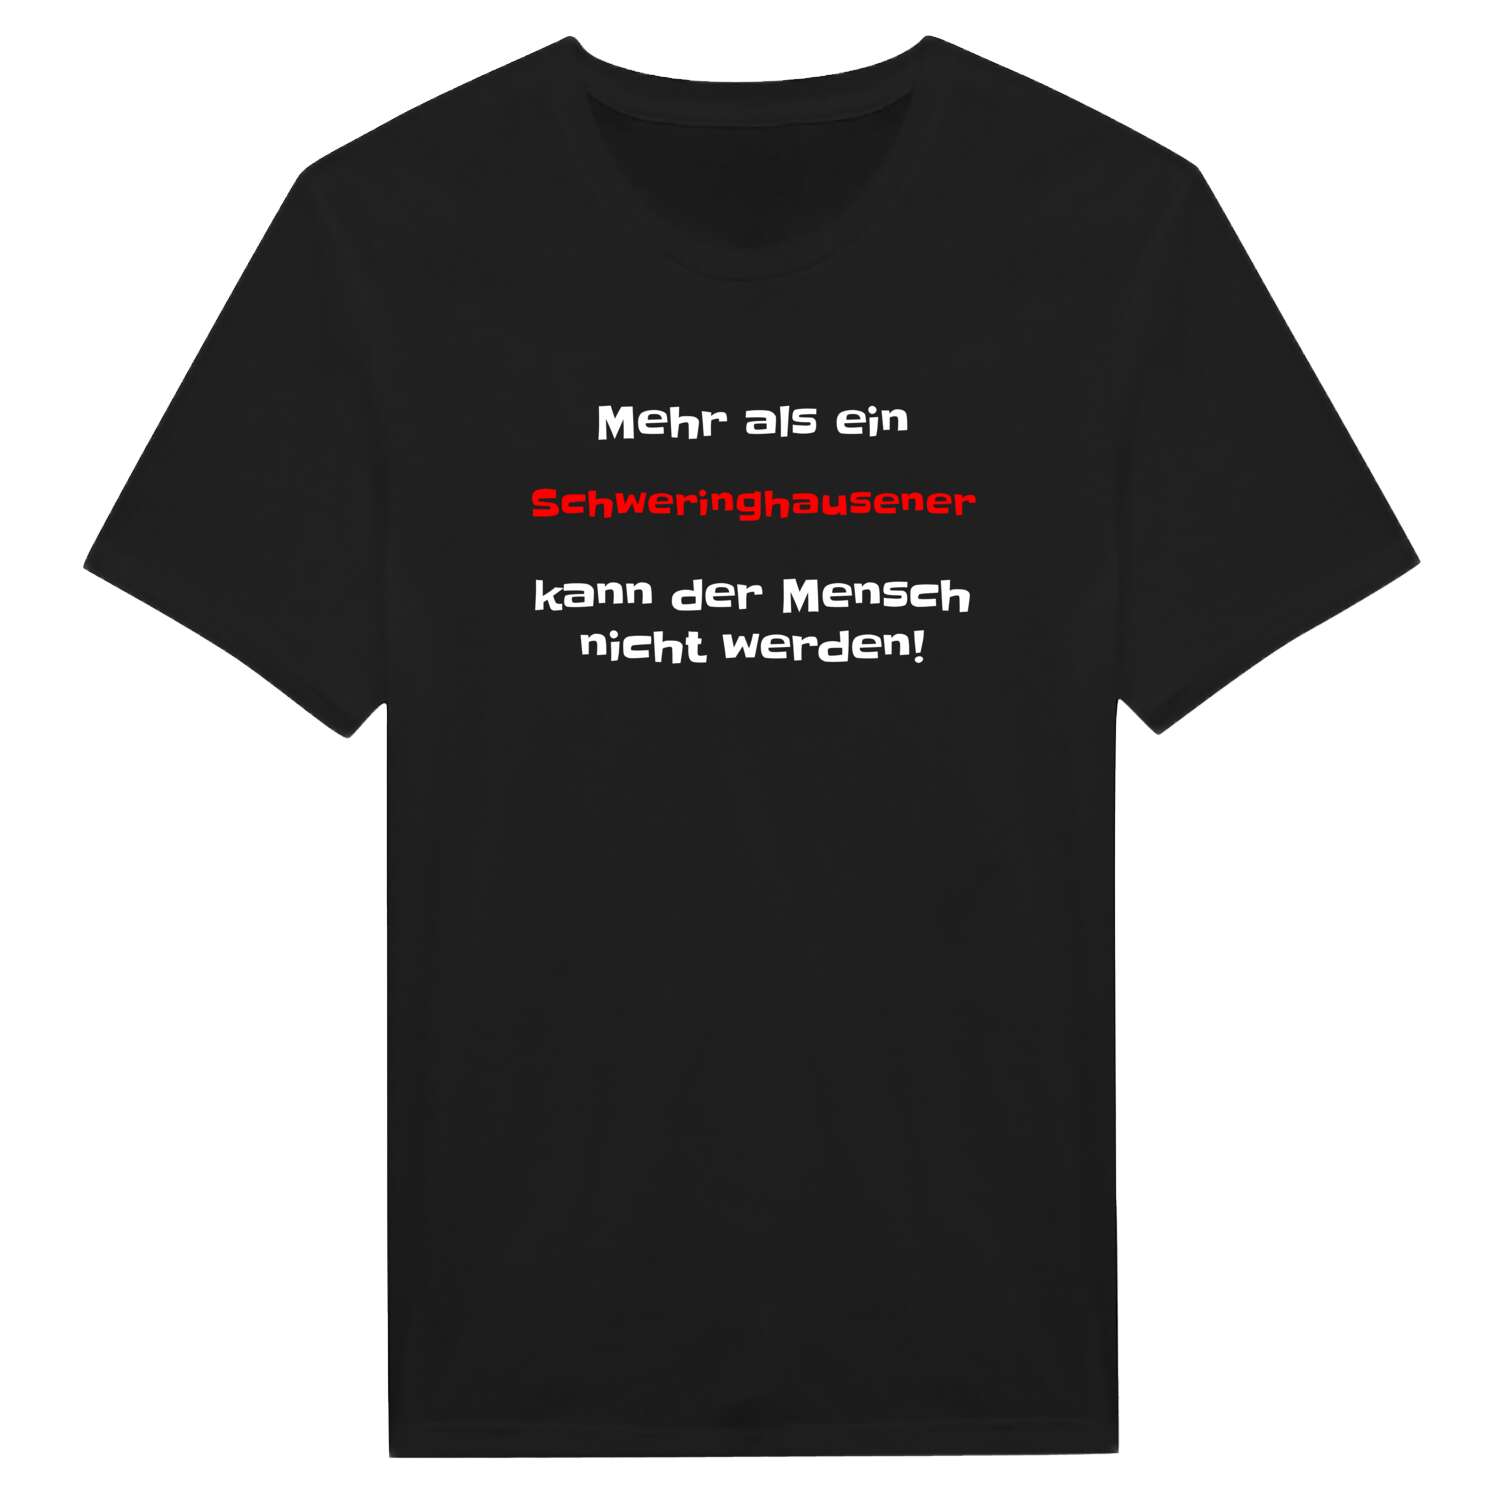 Schweringhausen T-Shirt »Mehr als ein«